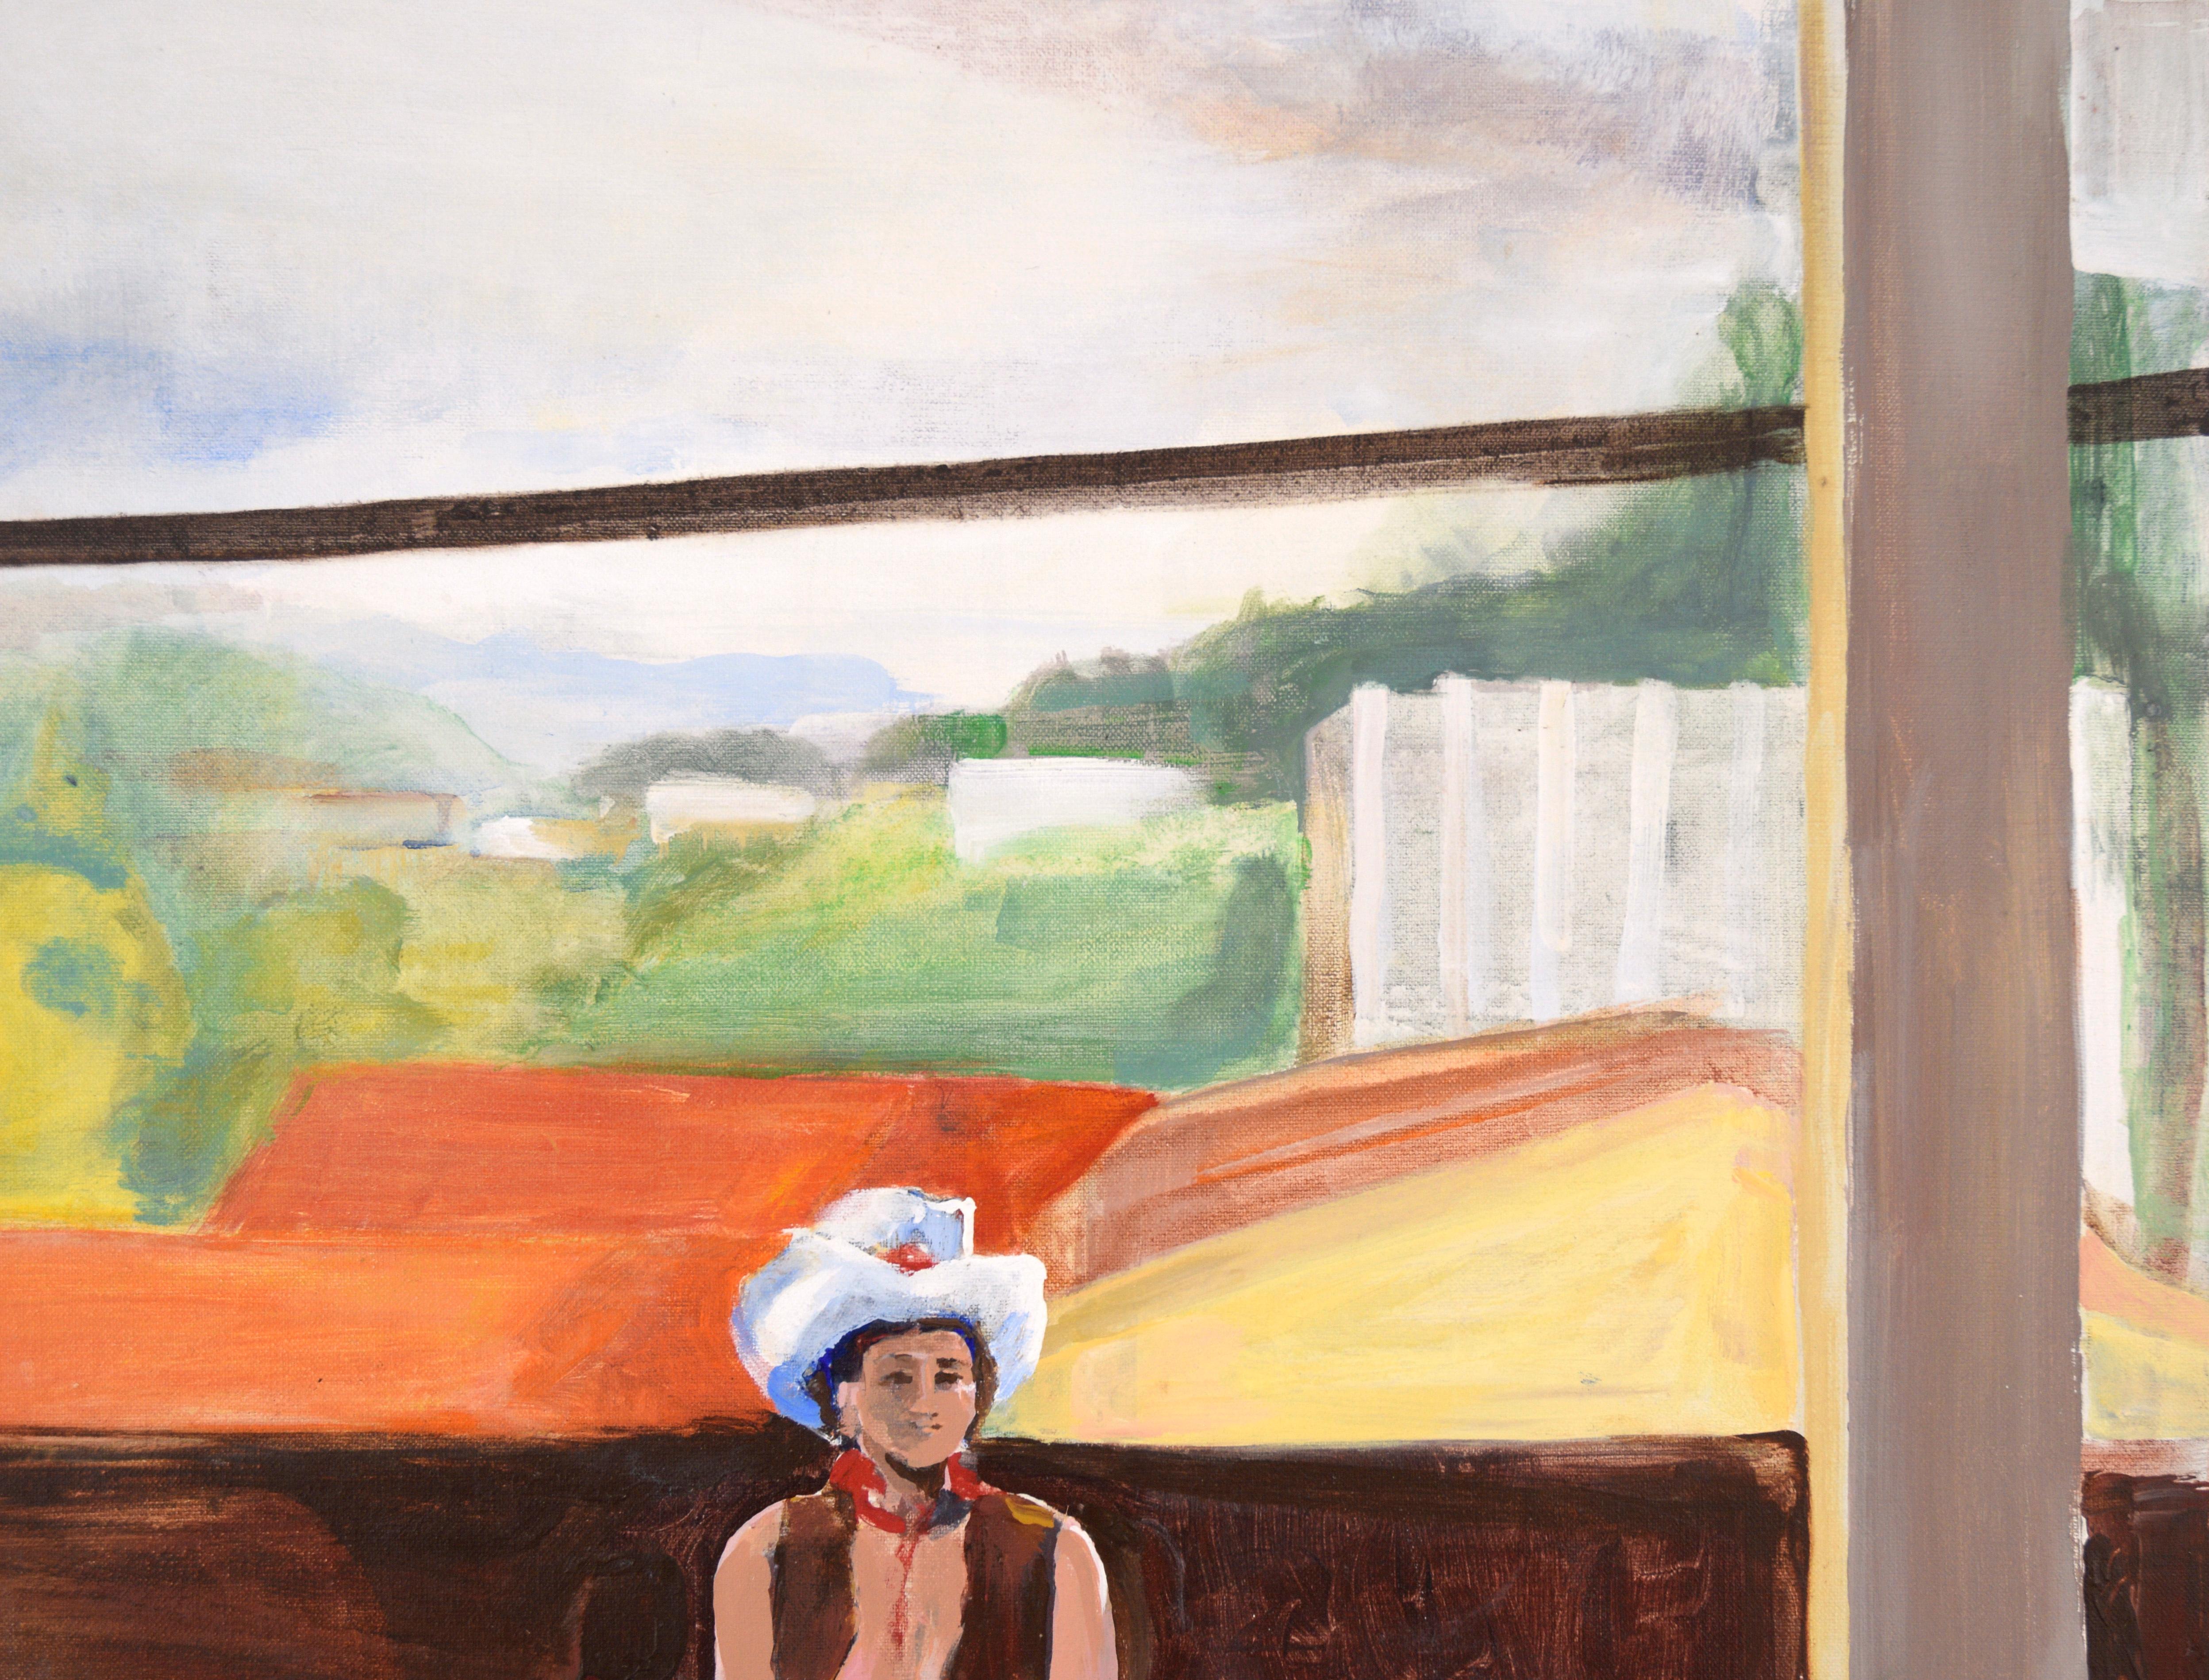 Cowgirl in the Studio - Étude figurative à l'huile sur toile - Modernisme américain Painting par Patricia Gren Hayes